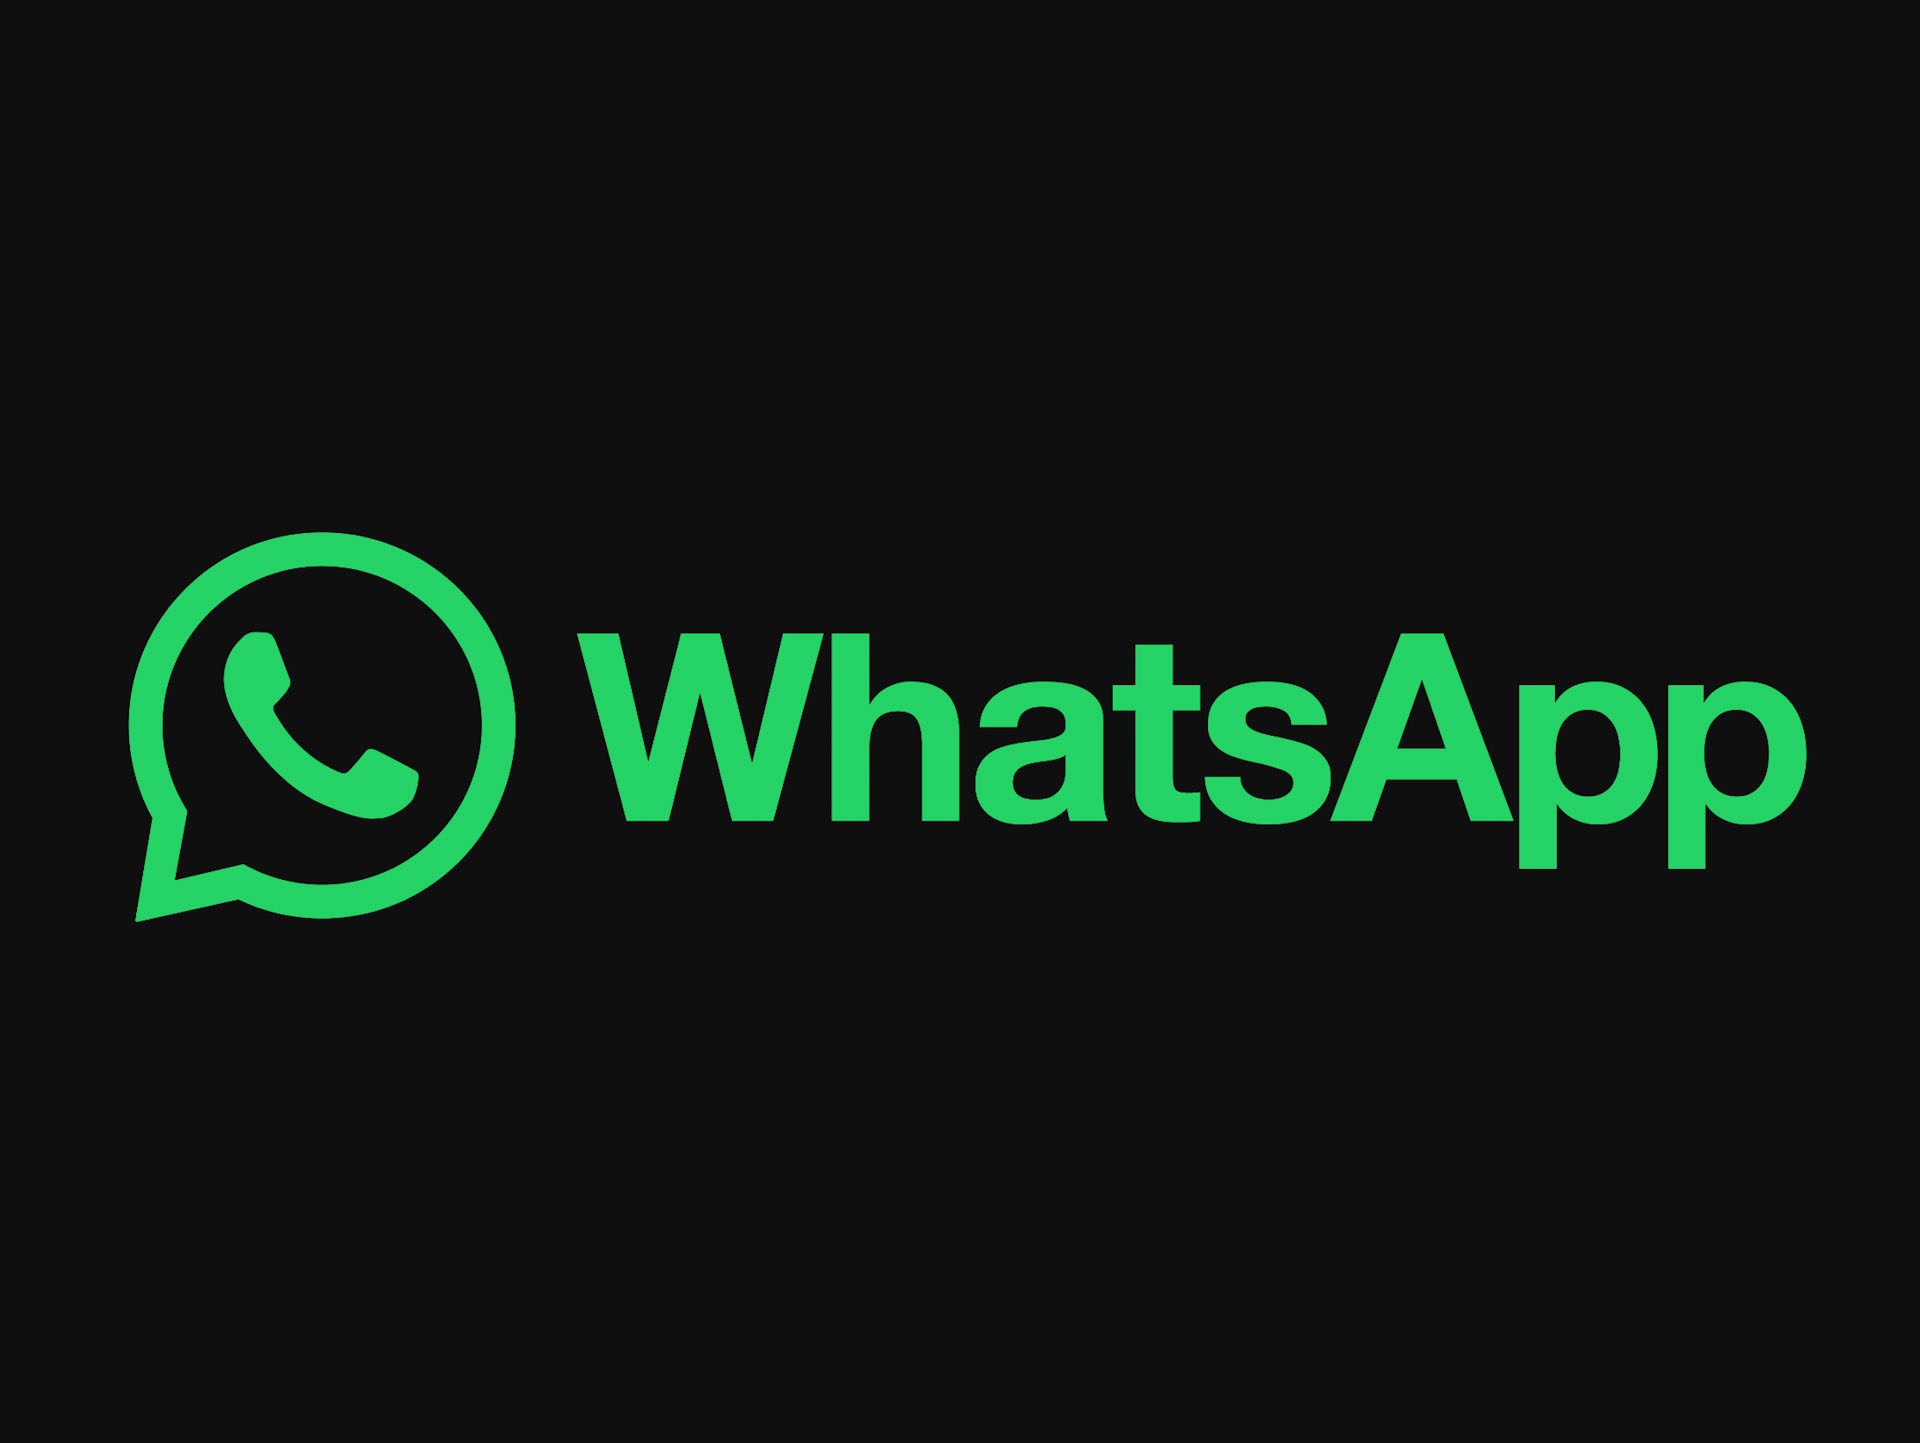 Link Download WhatsApp Beta Terbaru, Cicip Fitur Baru Duluan sebelum Orang Lain